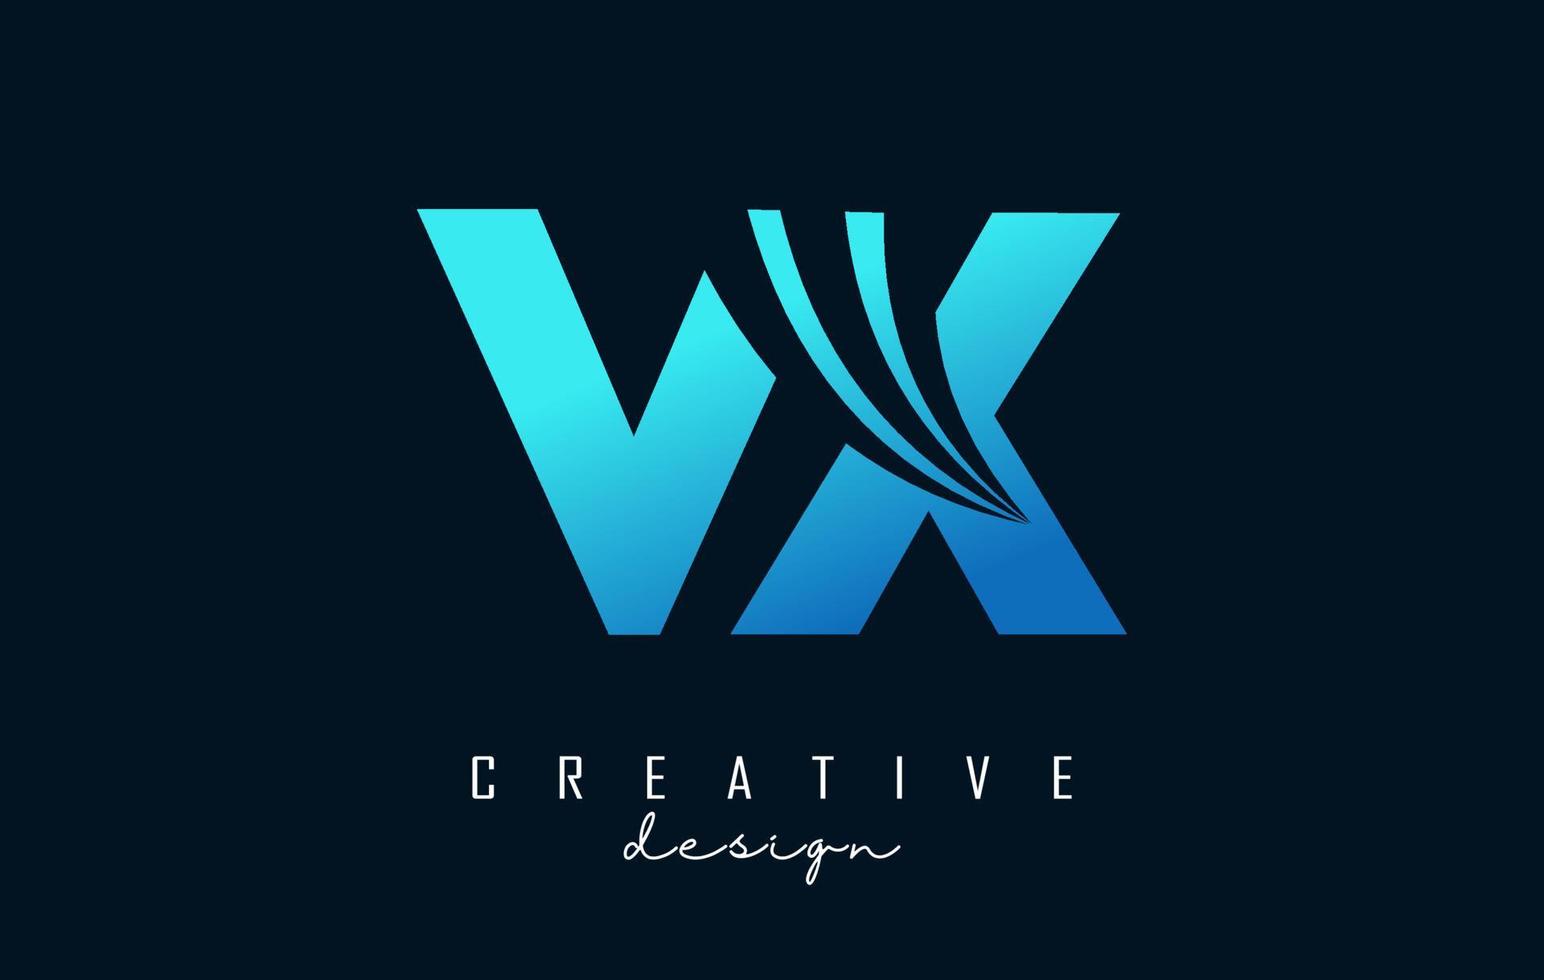 lettres bleues créatives logo vx vx avec lignes directrices et conception de concept de route. lettres avec un dessin géométrique. vecteur